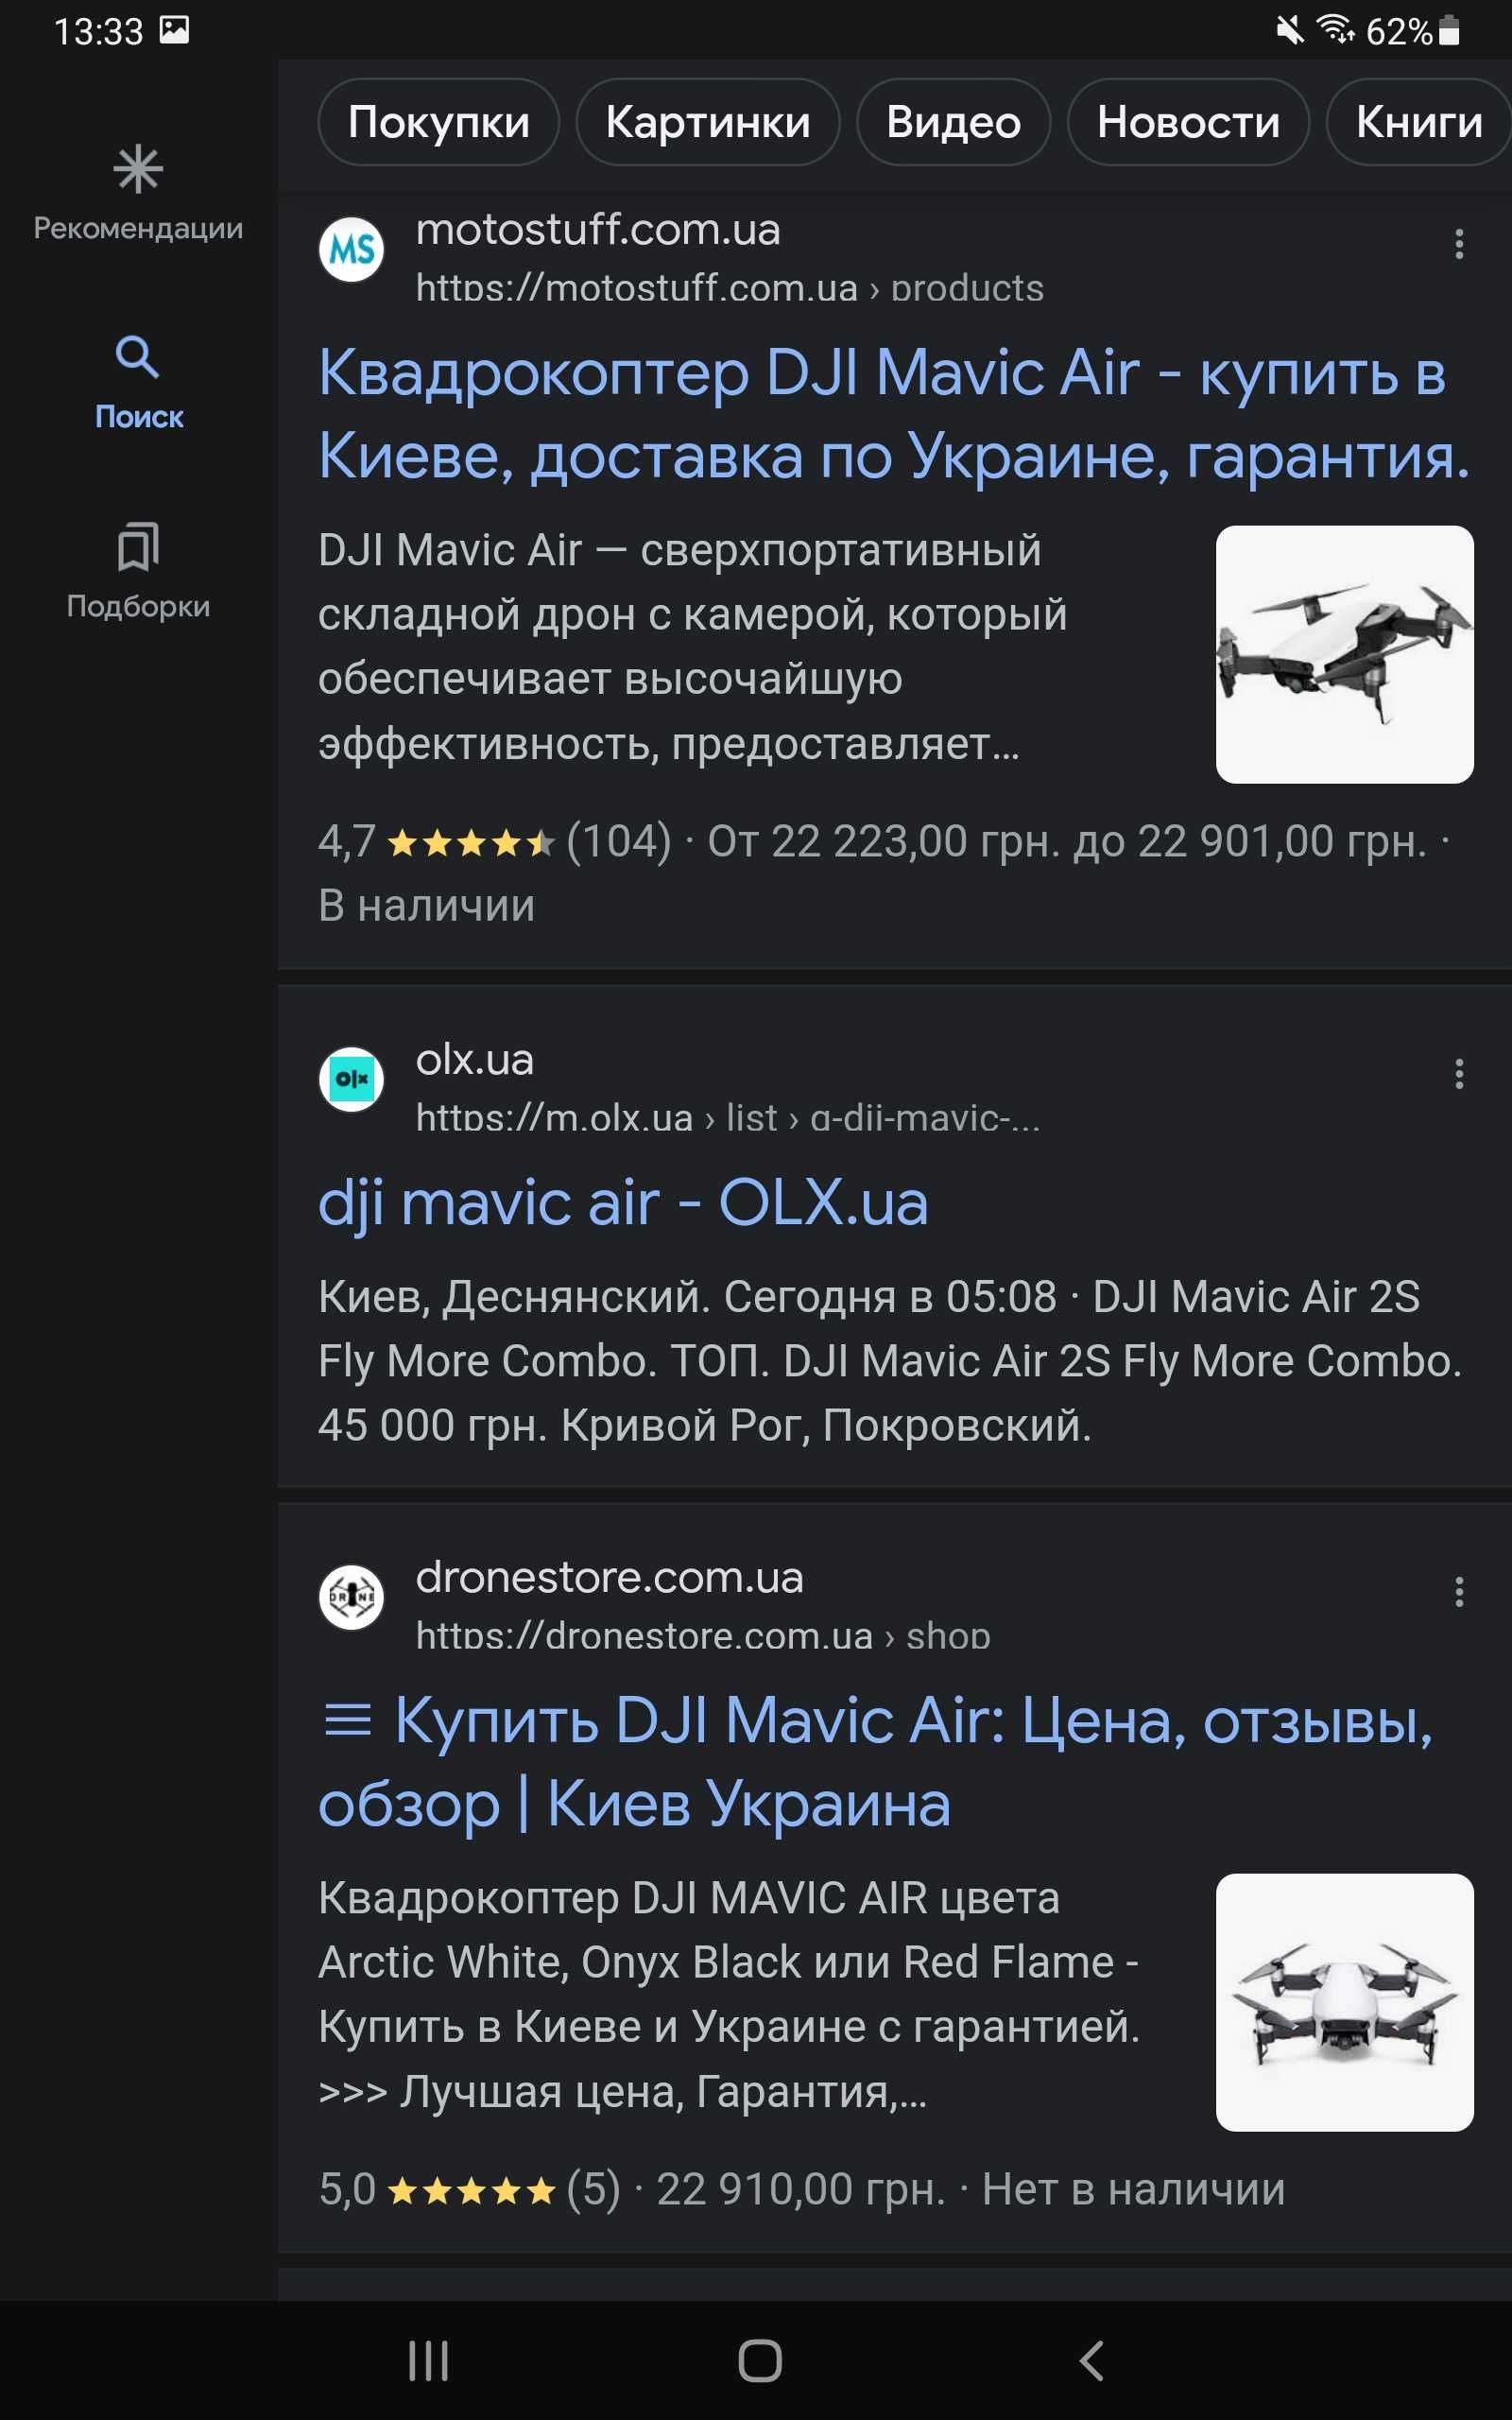 ПРОДАМ МЕНЯЮ НОВЫЙ - Квадрокоптер DJI Mavic Air